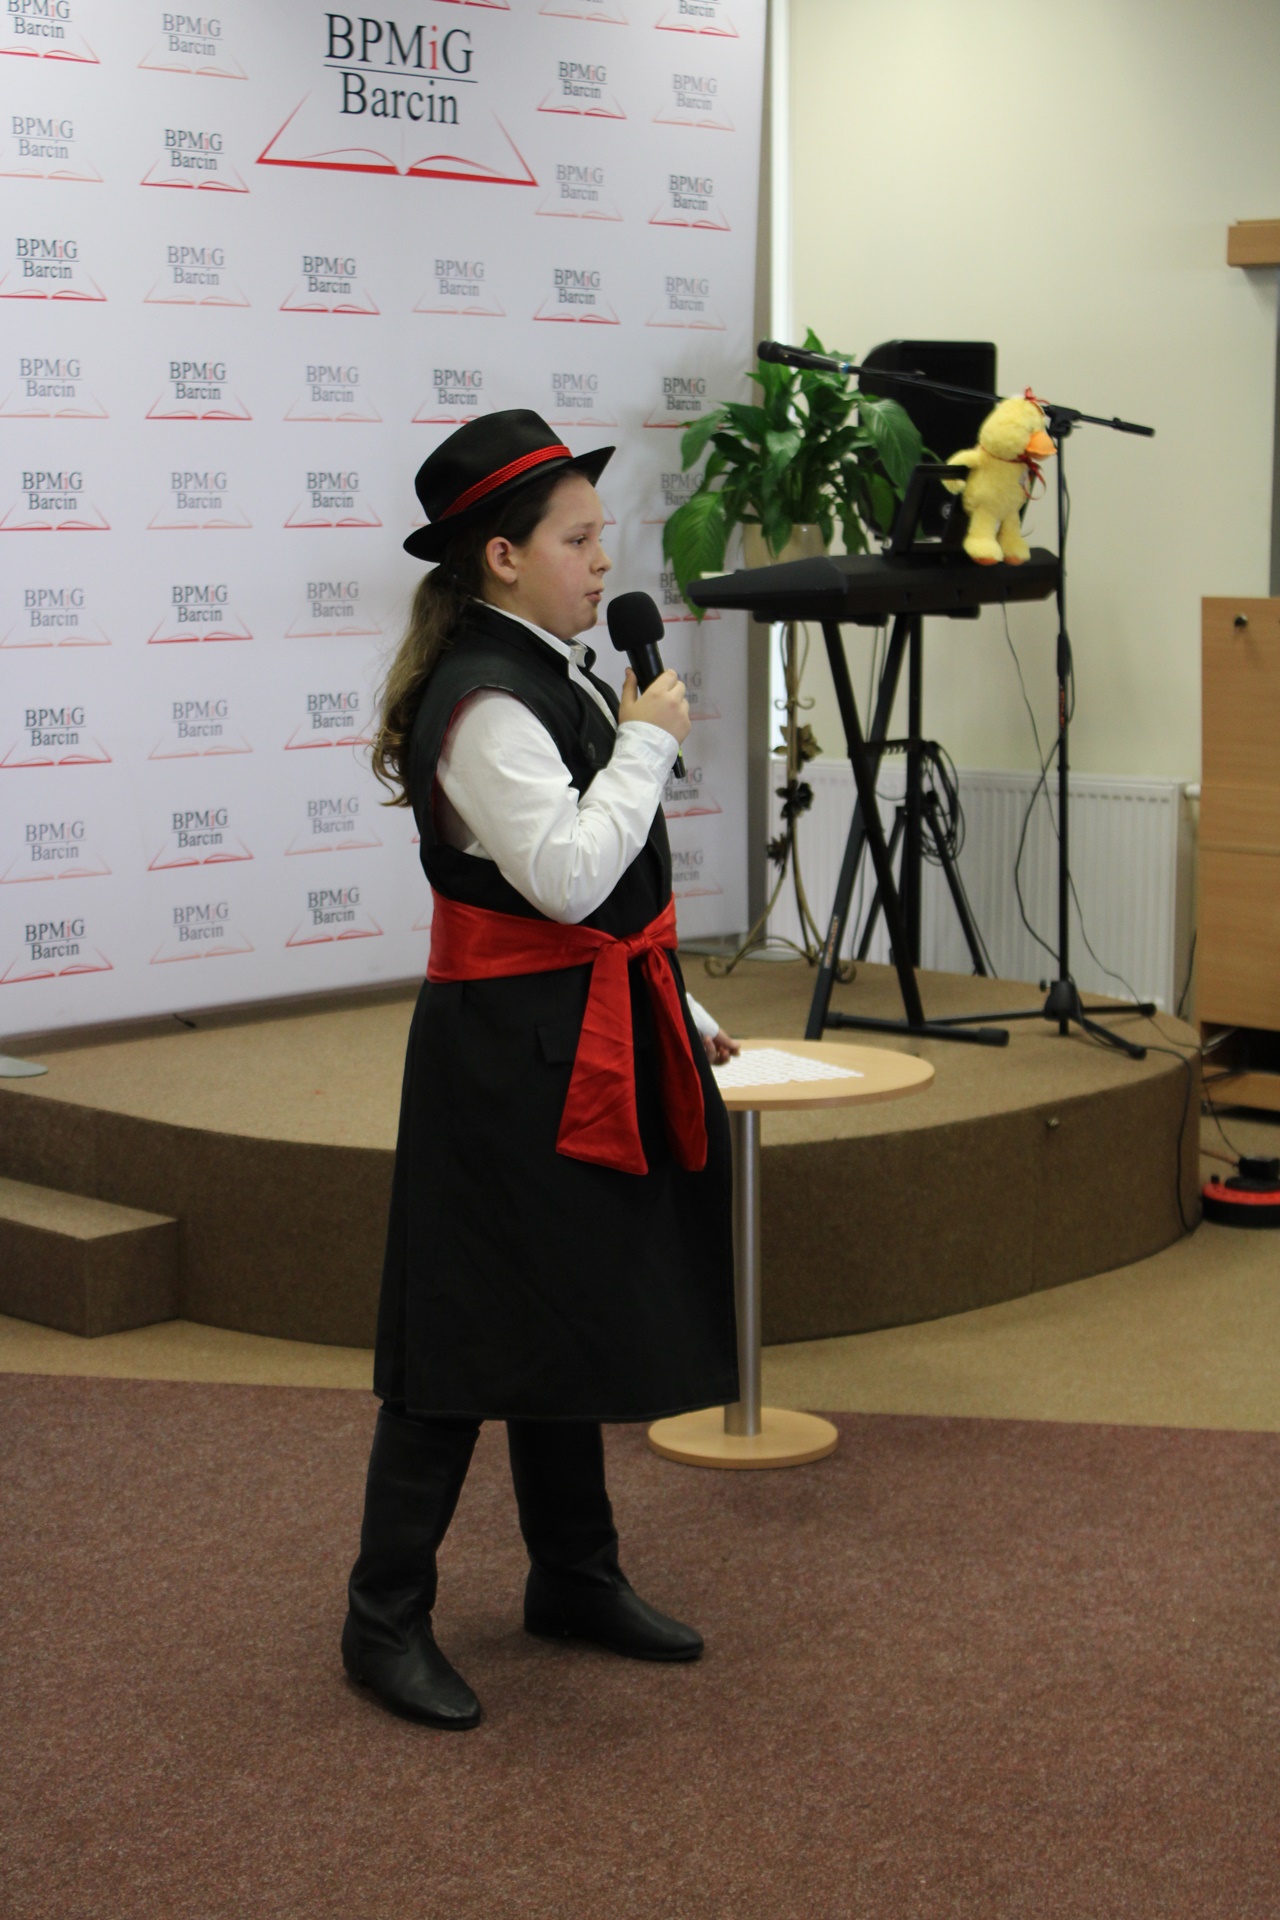 Chłopak z długimi włosami ubrany w czarny kapelusz obwiązany czerwoną wstążką, czarny kubrak bez rękawów przewiązany szeroką czerwoną szarfą, białą koszulę i czarne buty, występuje przed publicznością.